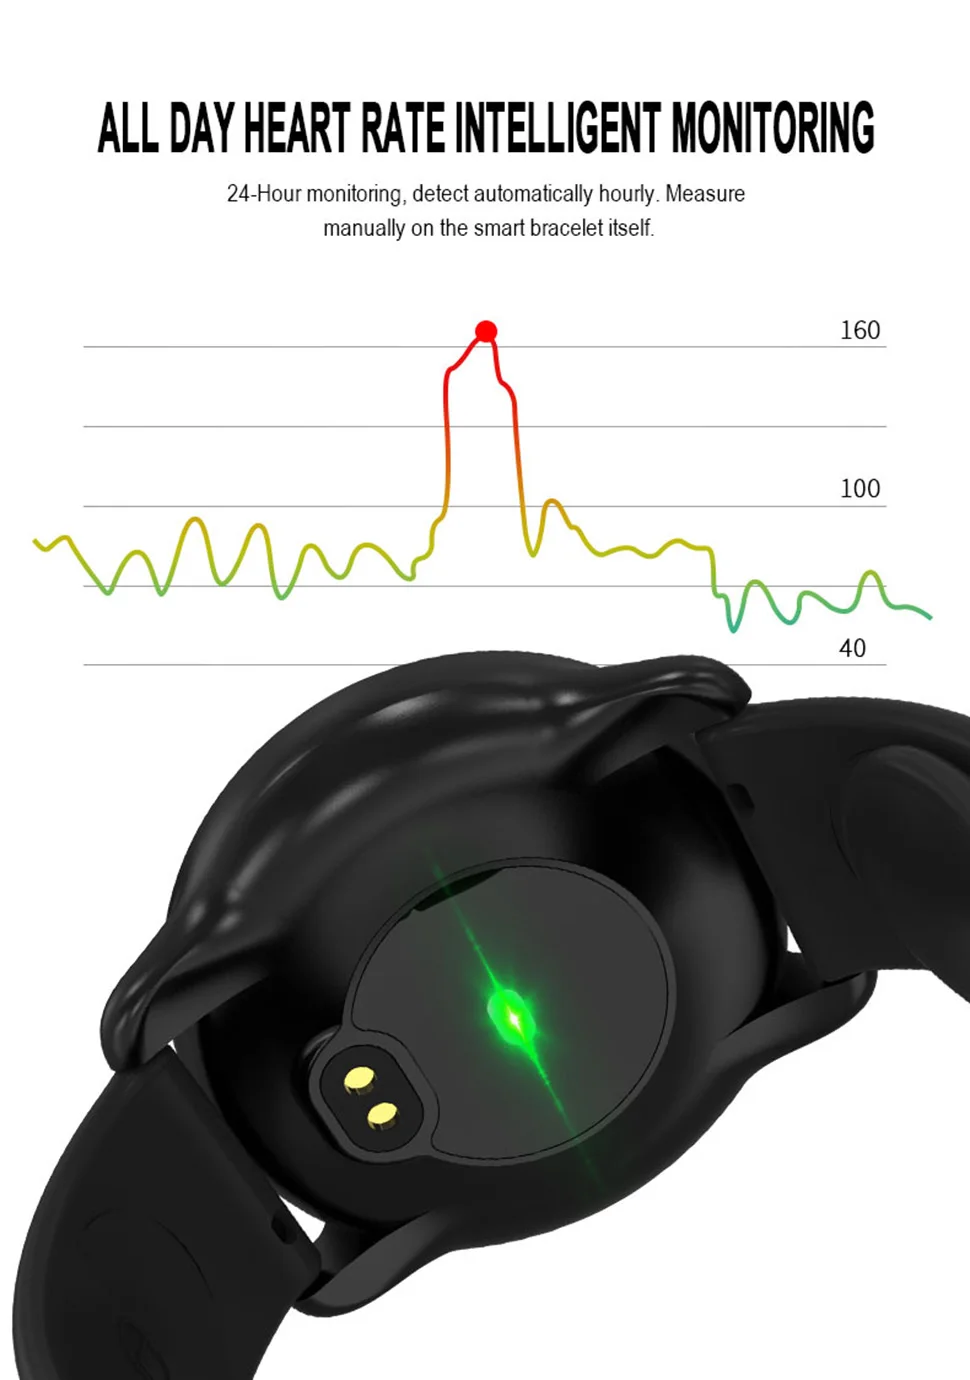 Смарт-часы Cobrafly K9, пульсометр, измеритель артериального давления, фитнес-трекер, IP67, водонепроницаемые Смарт-часы для мужчин wo men, pk Q9 B57